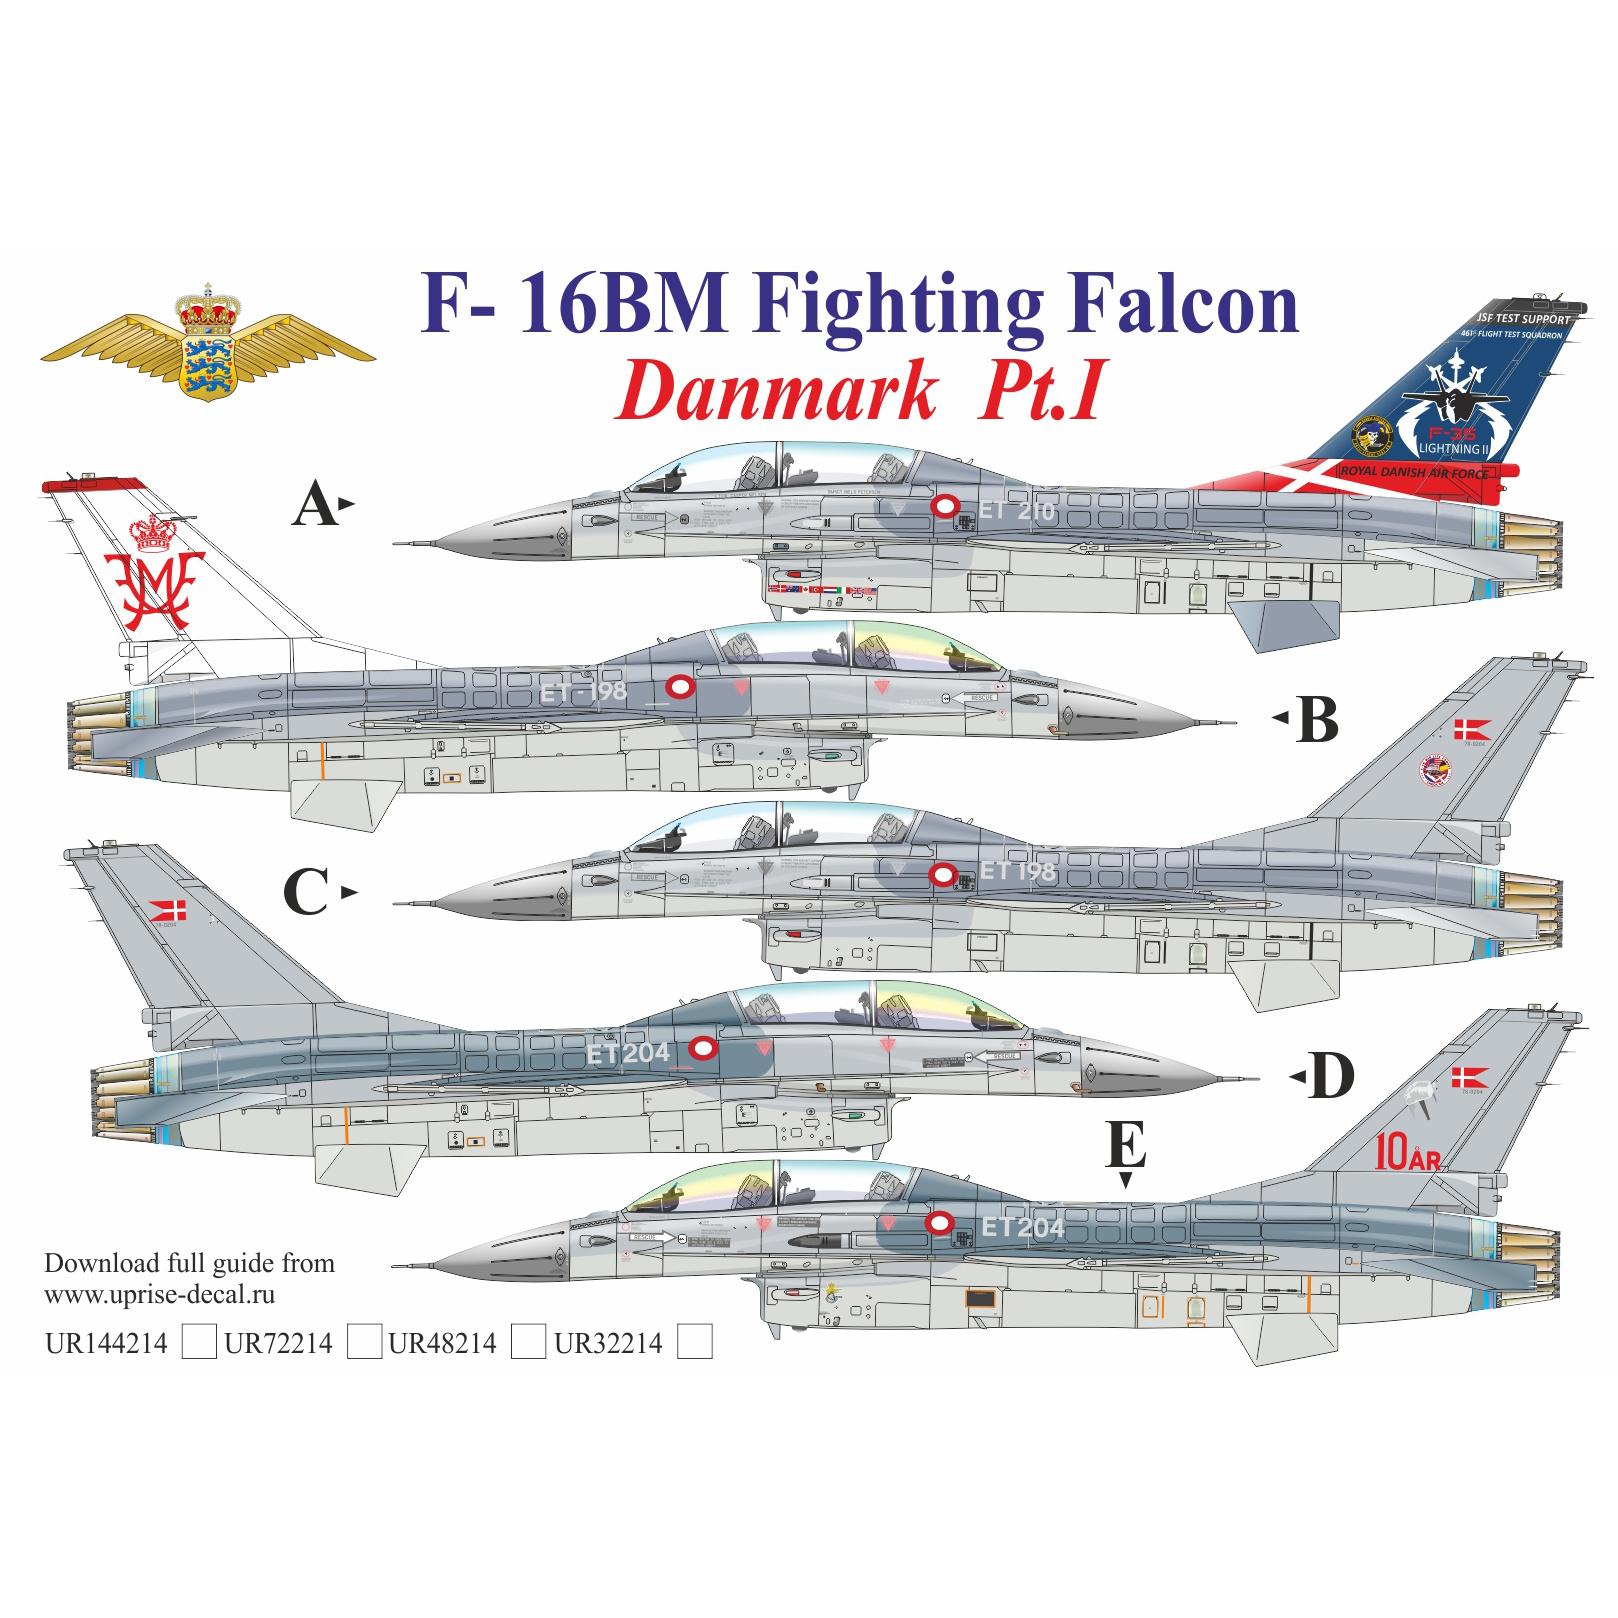 UR48214 Sunrise 1/48 Decal for F-16BM Fighting Falcon Danmark Pt.1